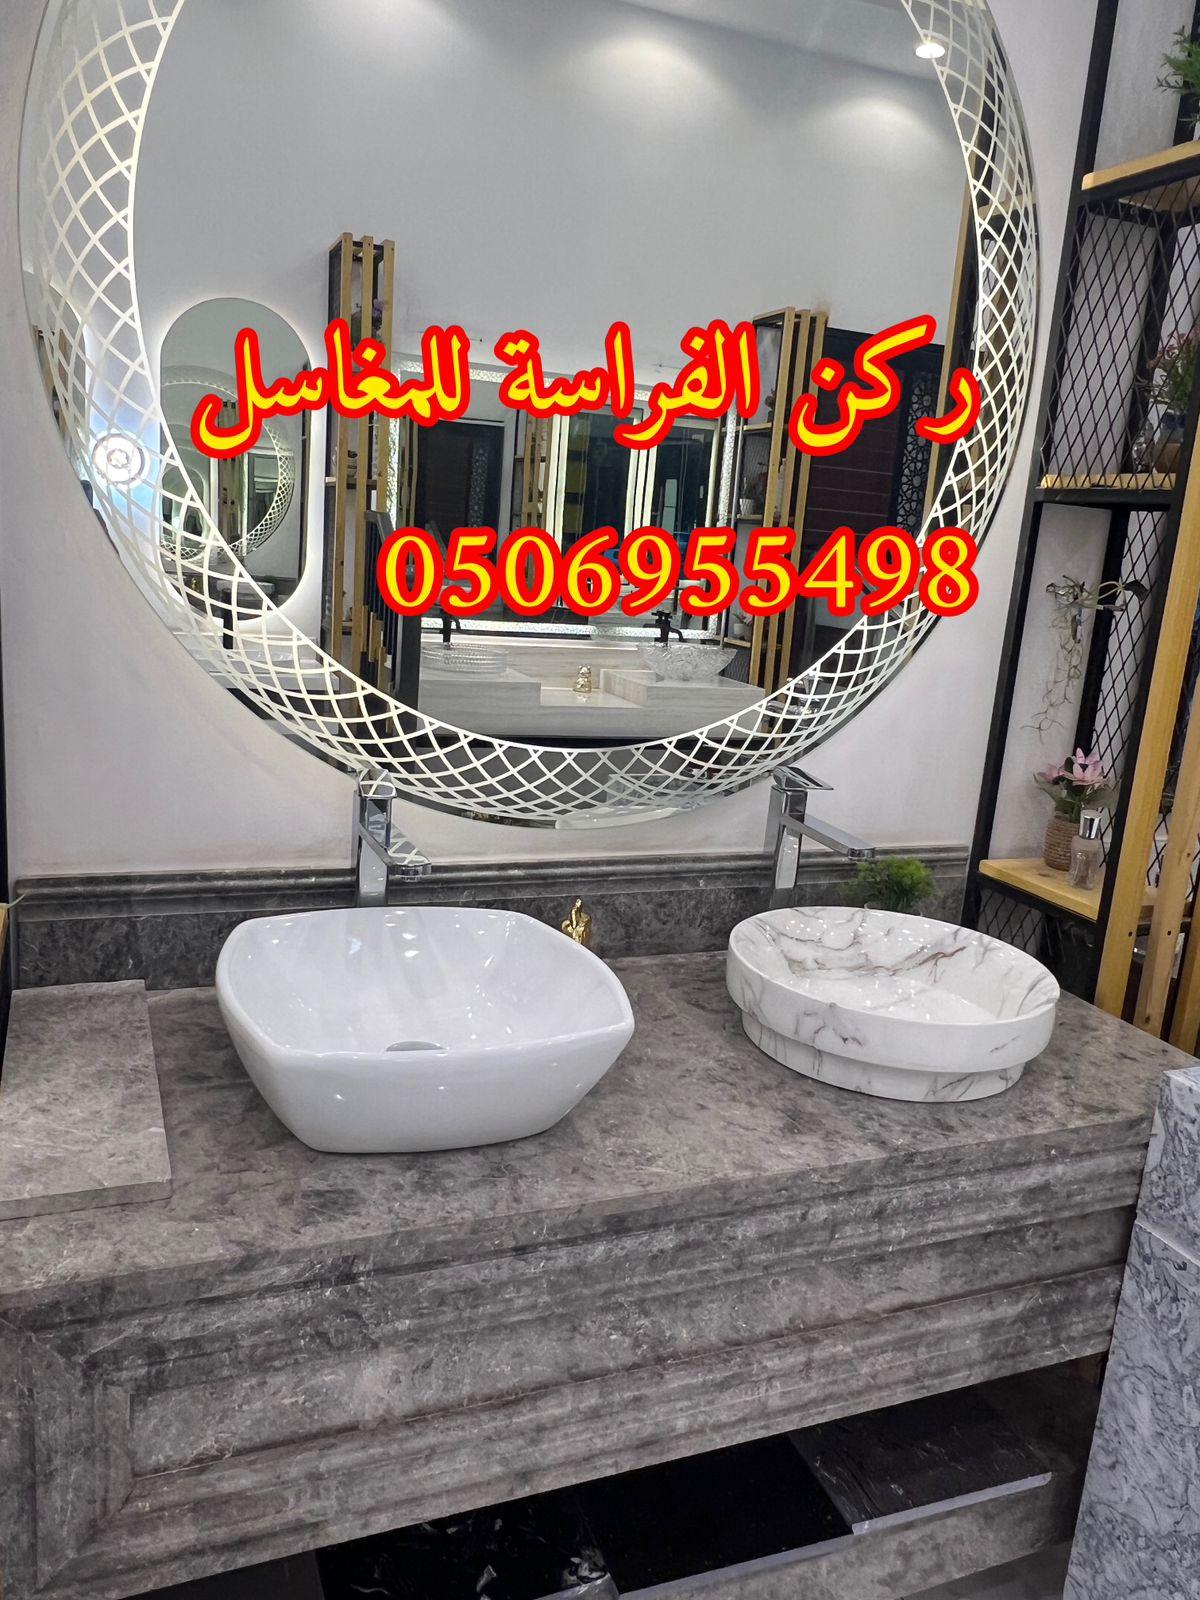 مغاسل حمامات رخام مودرن فخمة في الرياض,0506955498 391858653